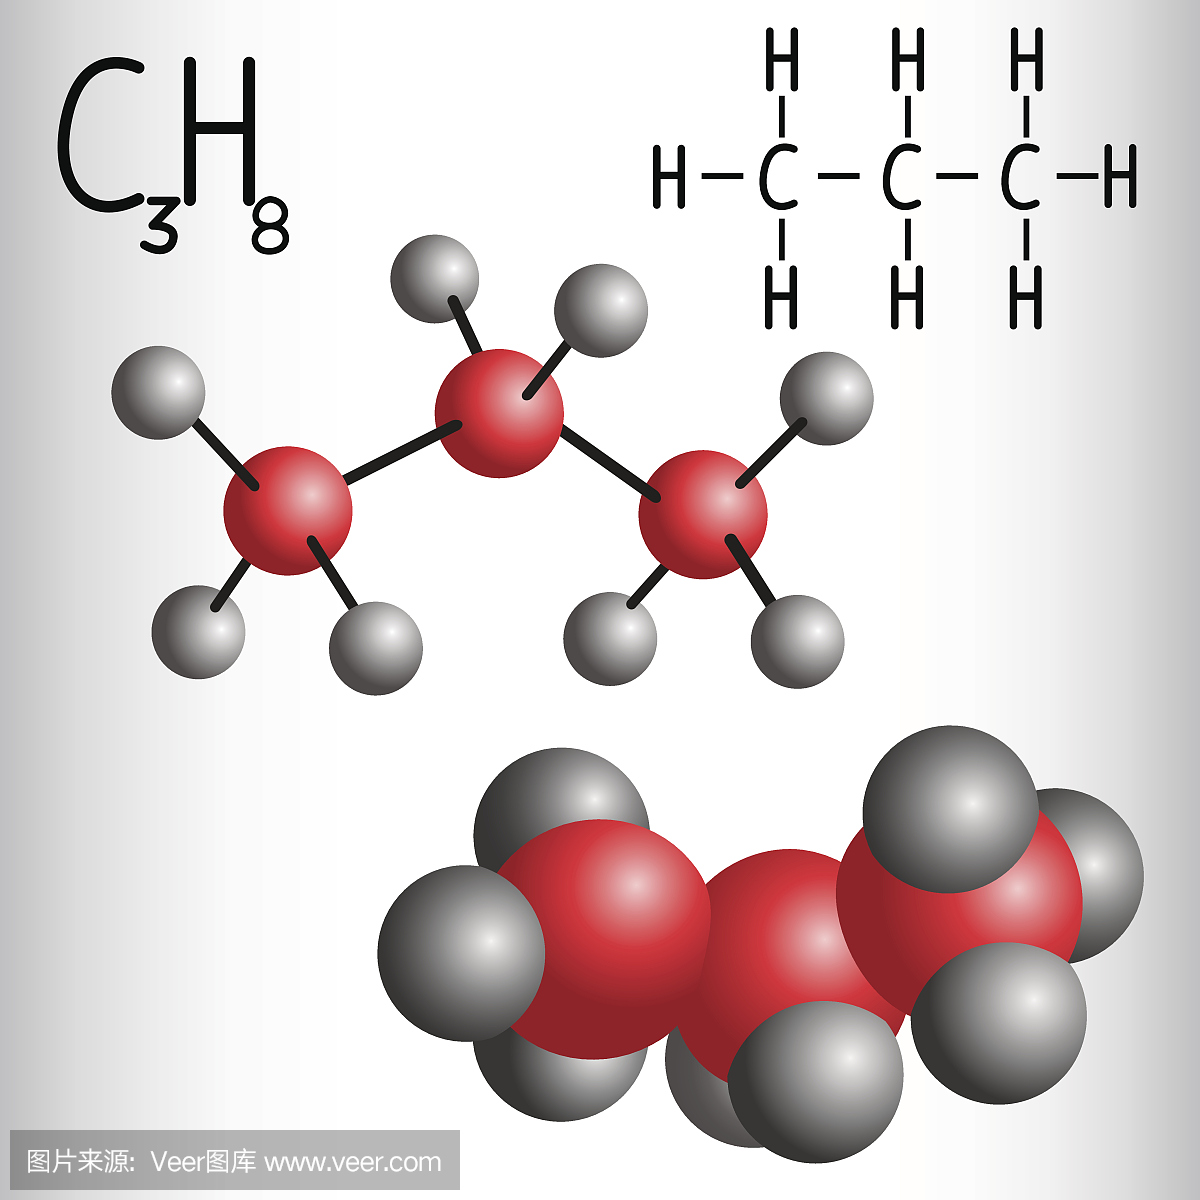 丙烷C3H8的化学式和分子模型